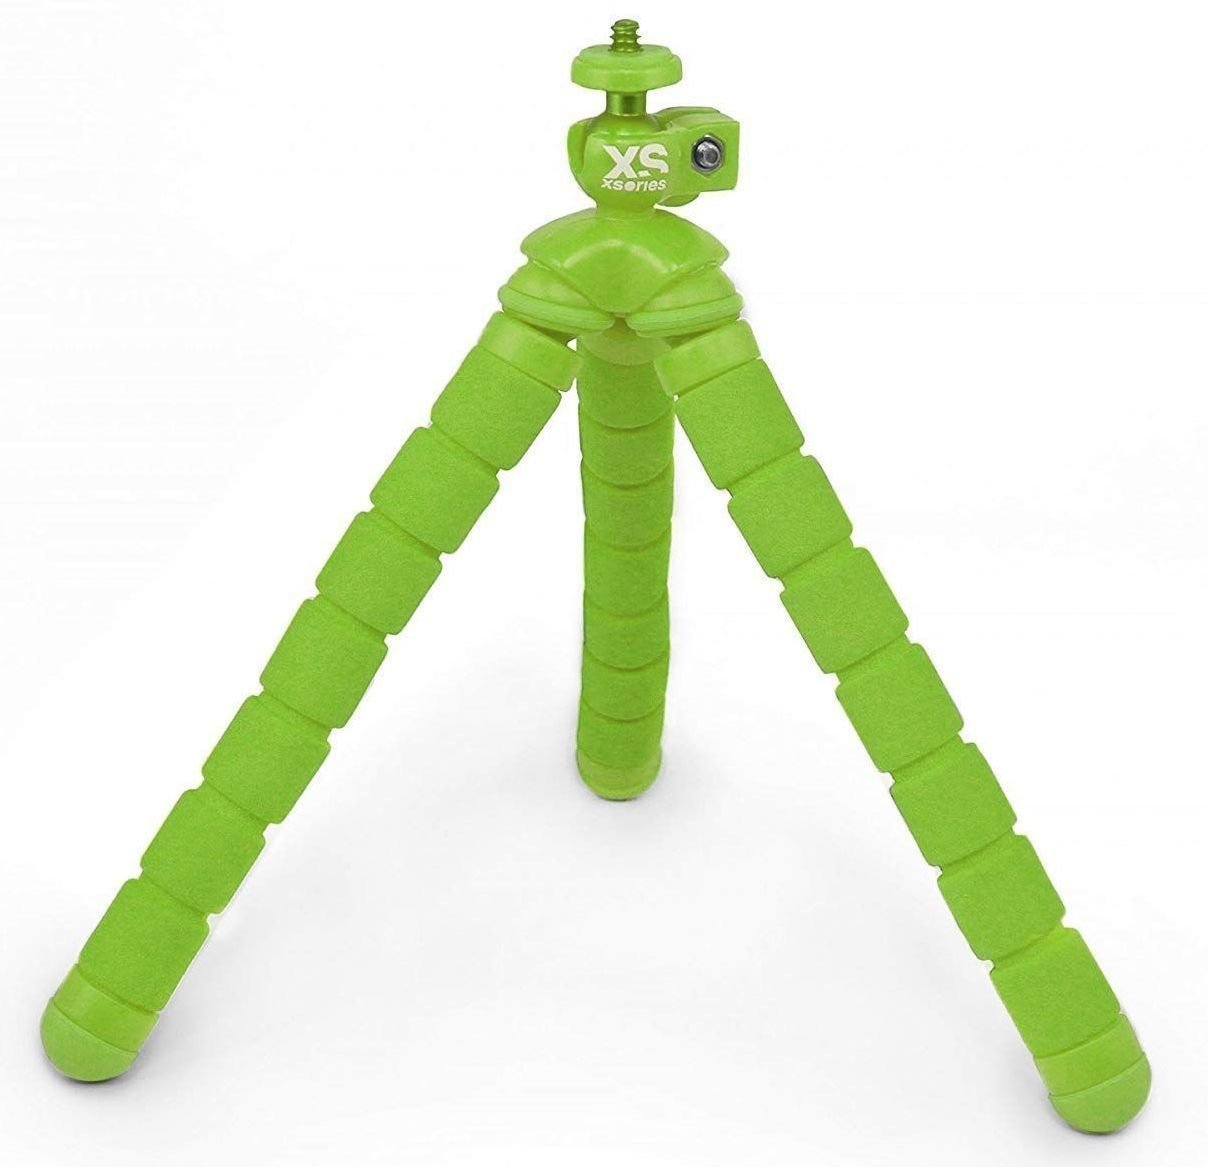 Accesorios GoPro XSories Bendy Green Verde